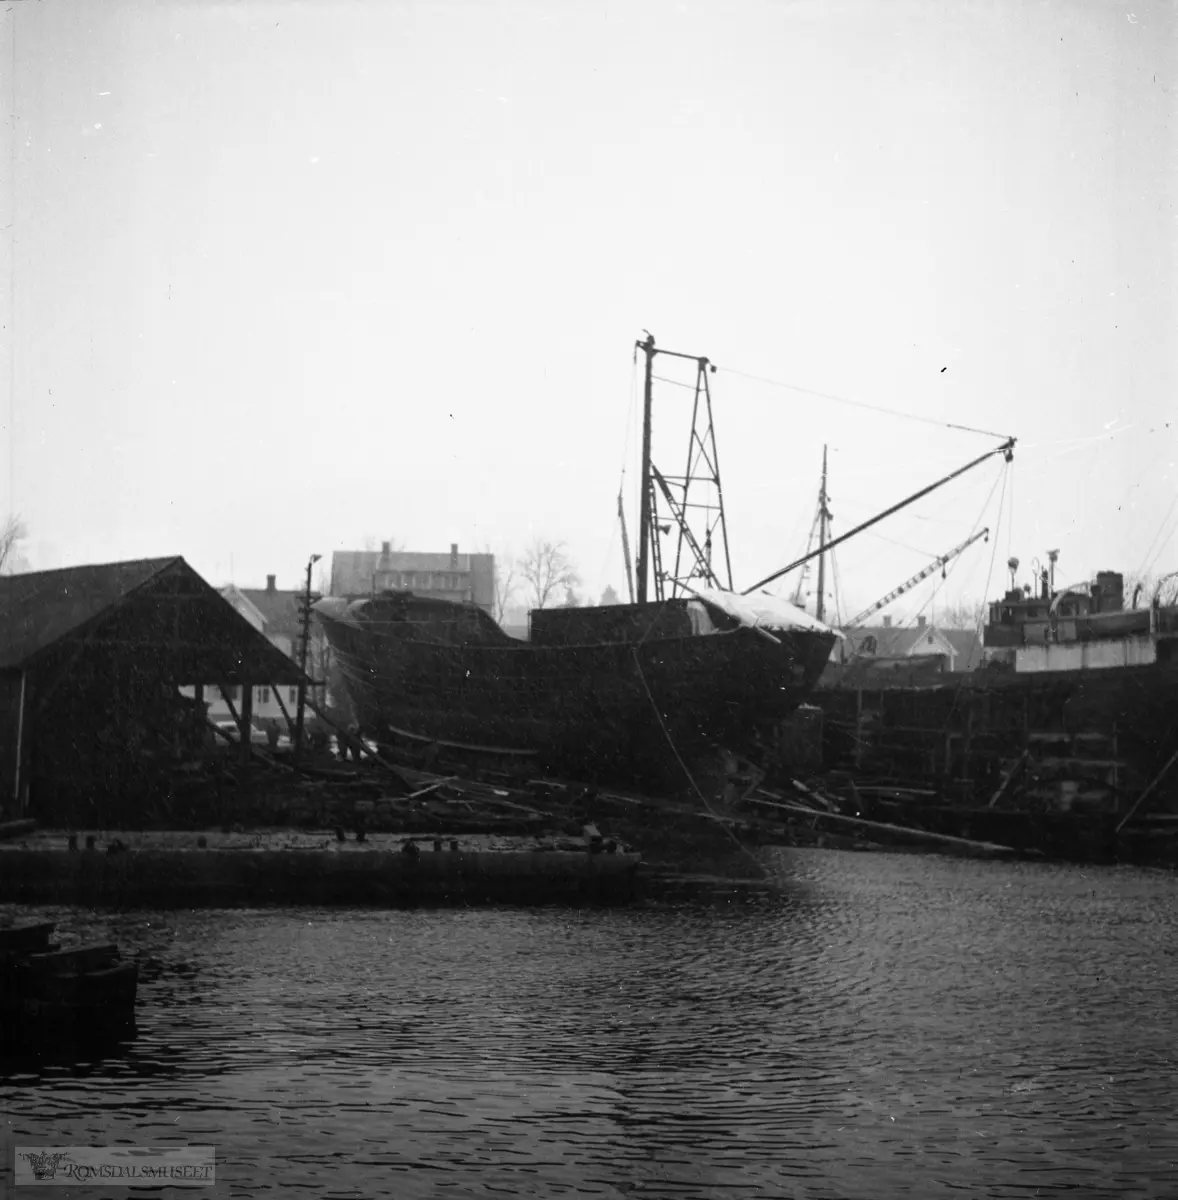 "Sjøsetting av Islandsbåt 10.02.1962 i snøfokk" "Titan" "Byggenummer 168" "Dåp?" "1958" "Bolsønes Verft"